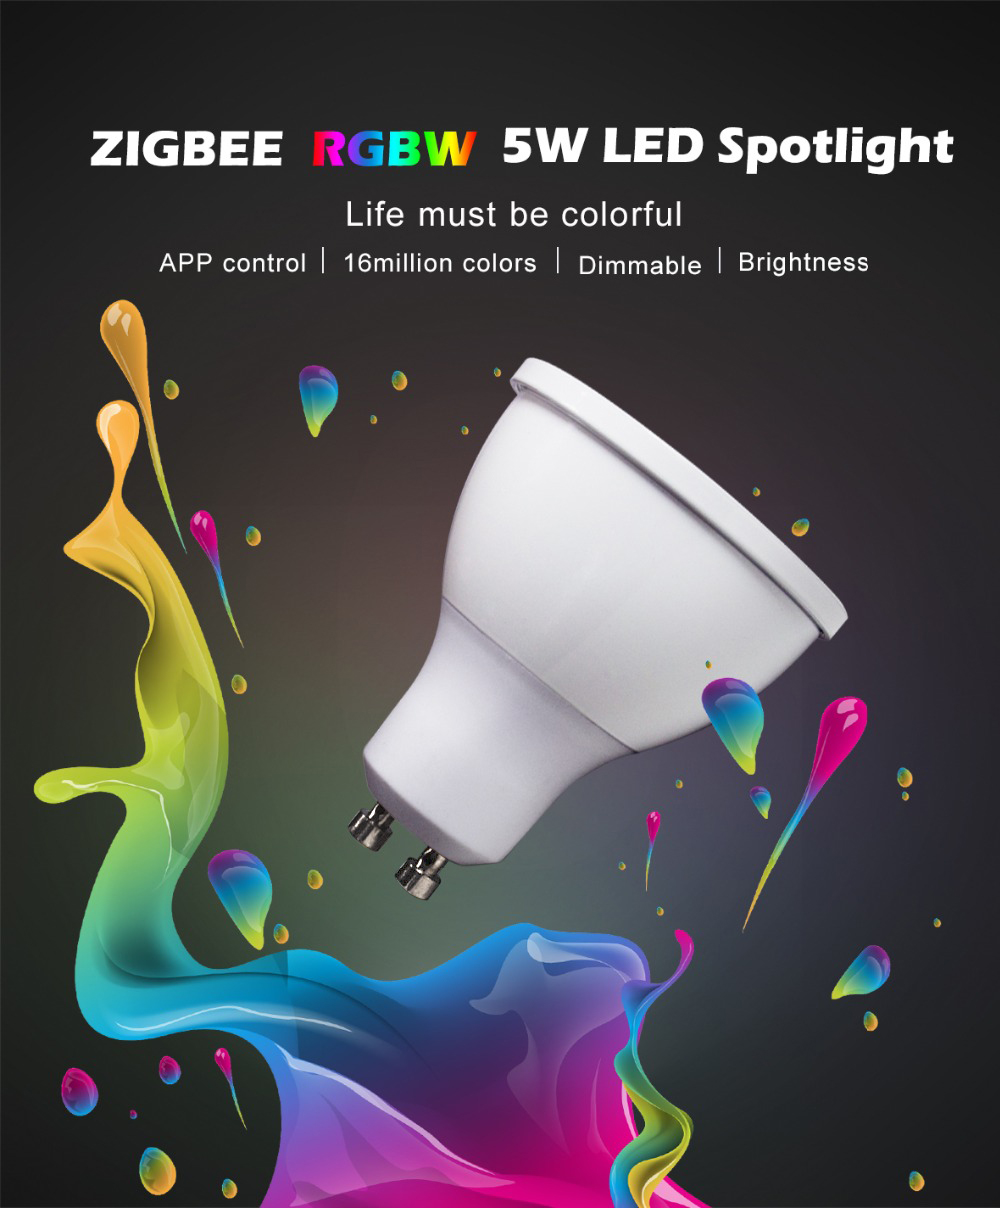 GLEDOPTO-GL-S-003Z-AC110-240V-ZIGBEE-ZLL-RGBW-GU10-5W-LED-Spotlight-Bulb-Work-with-Amazon-Echo-Plus-1477503-1